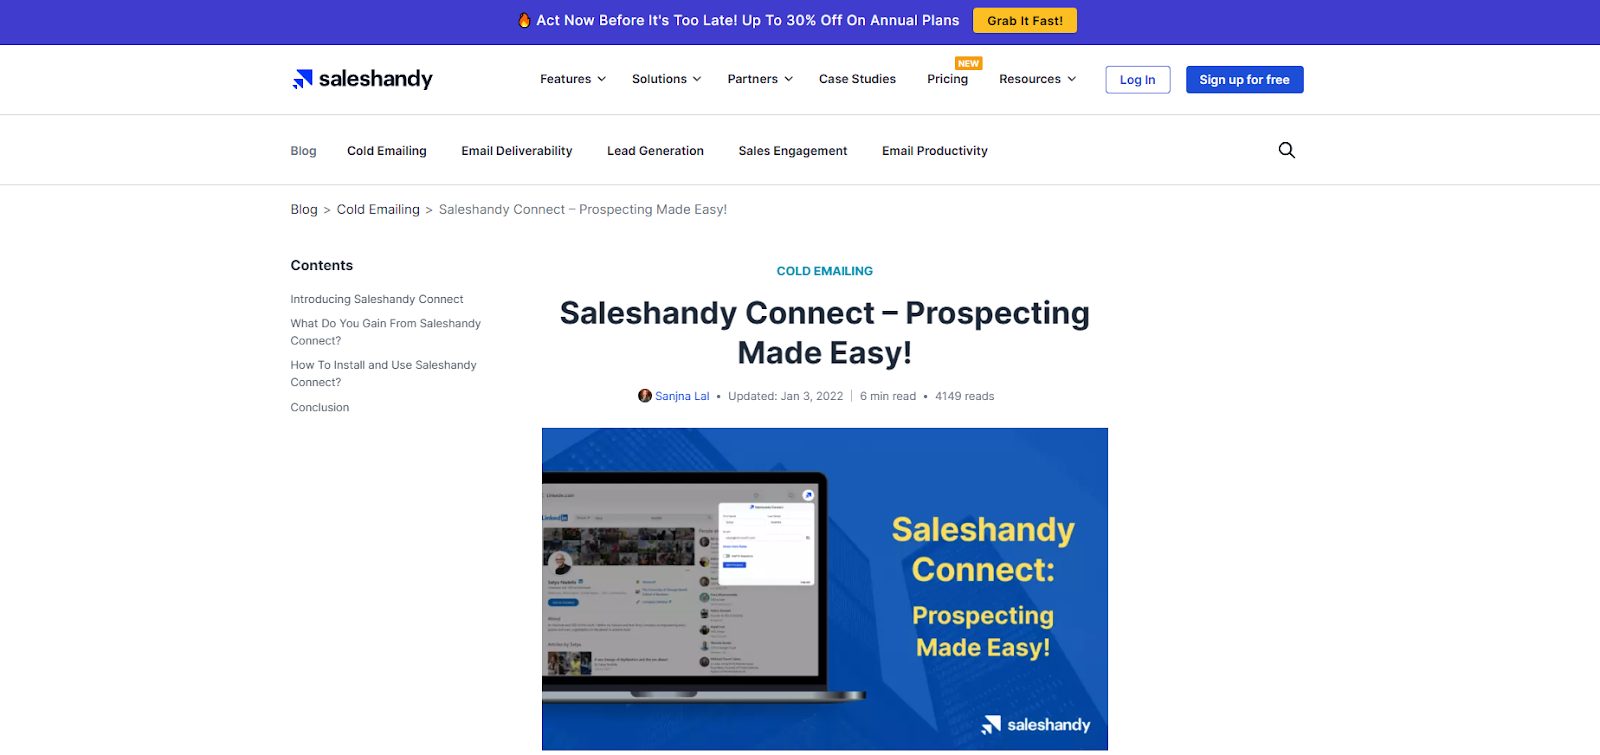 sales handy homepage 